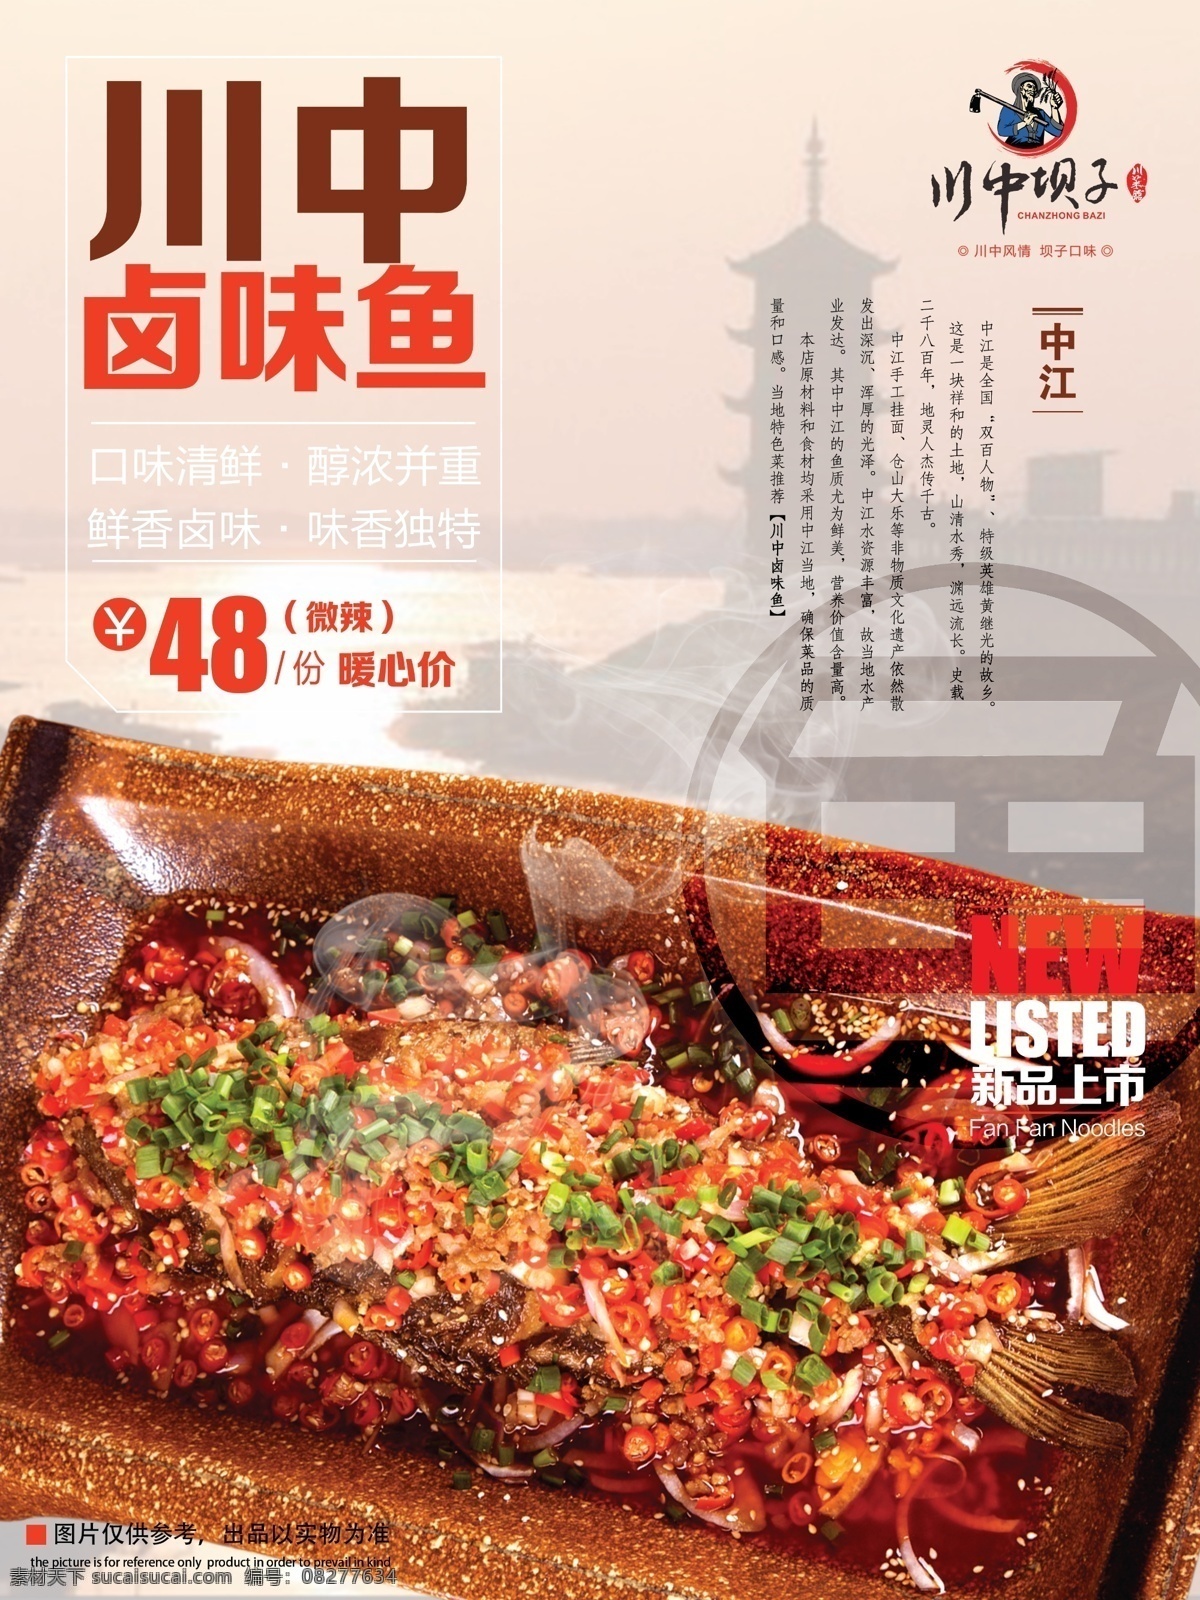 四川餐馆海报 川菜 海报 卤味鱼 灰色